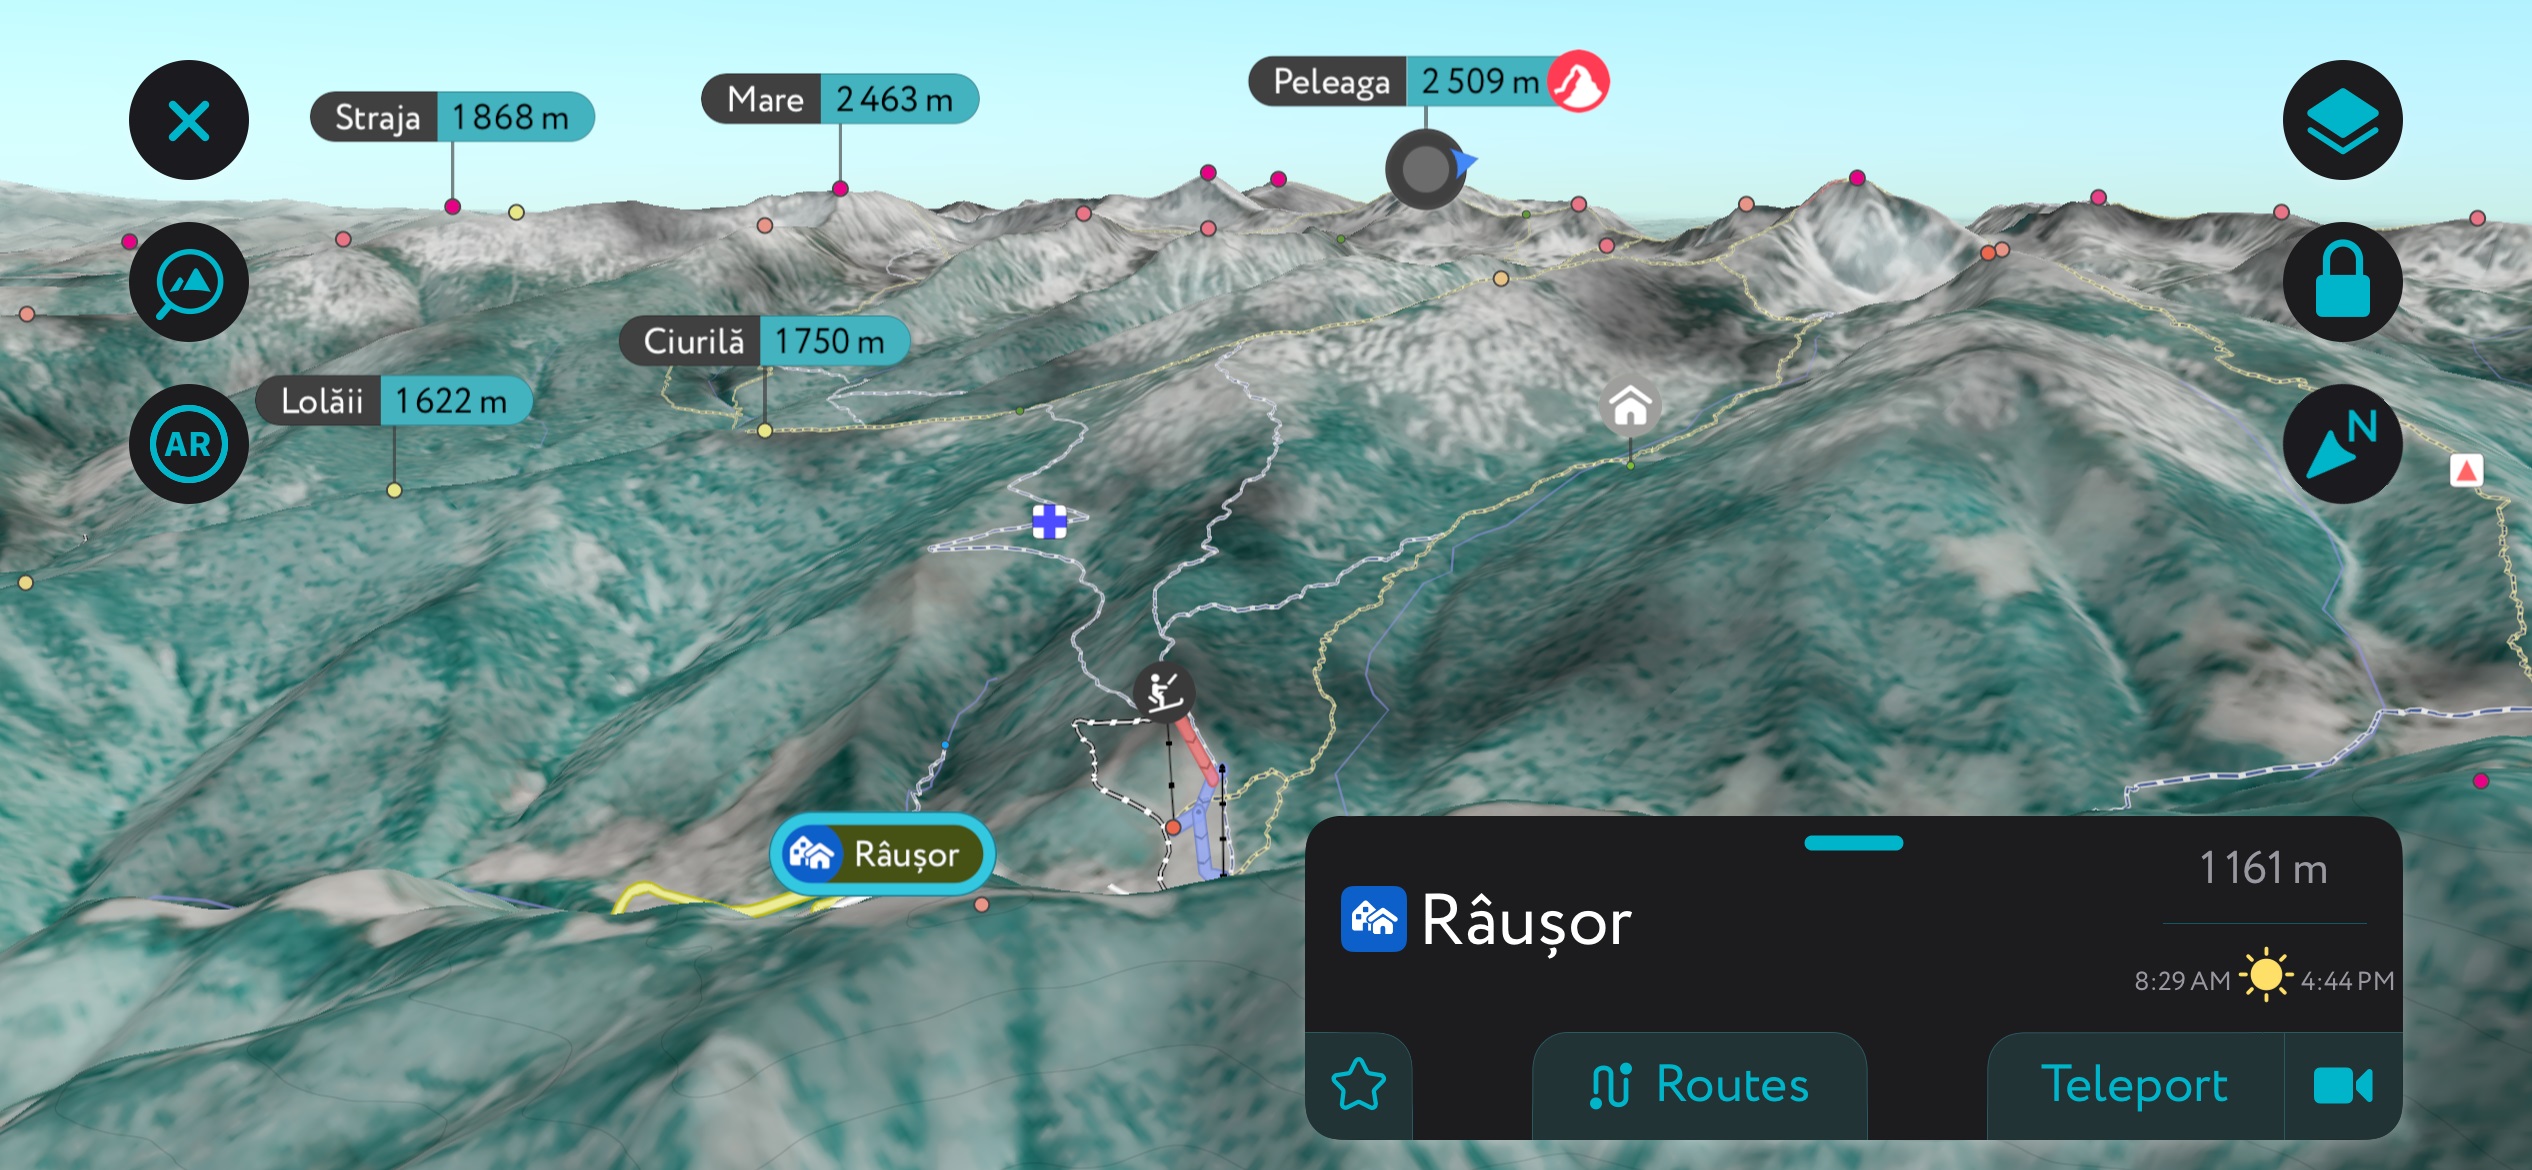 Râusor Ski Area on PeakVisor’s mobile app